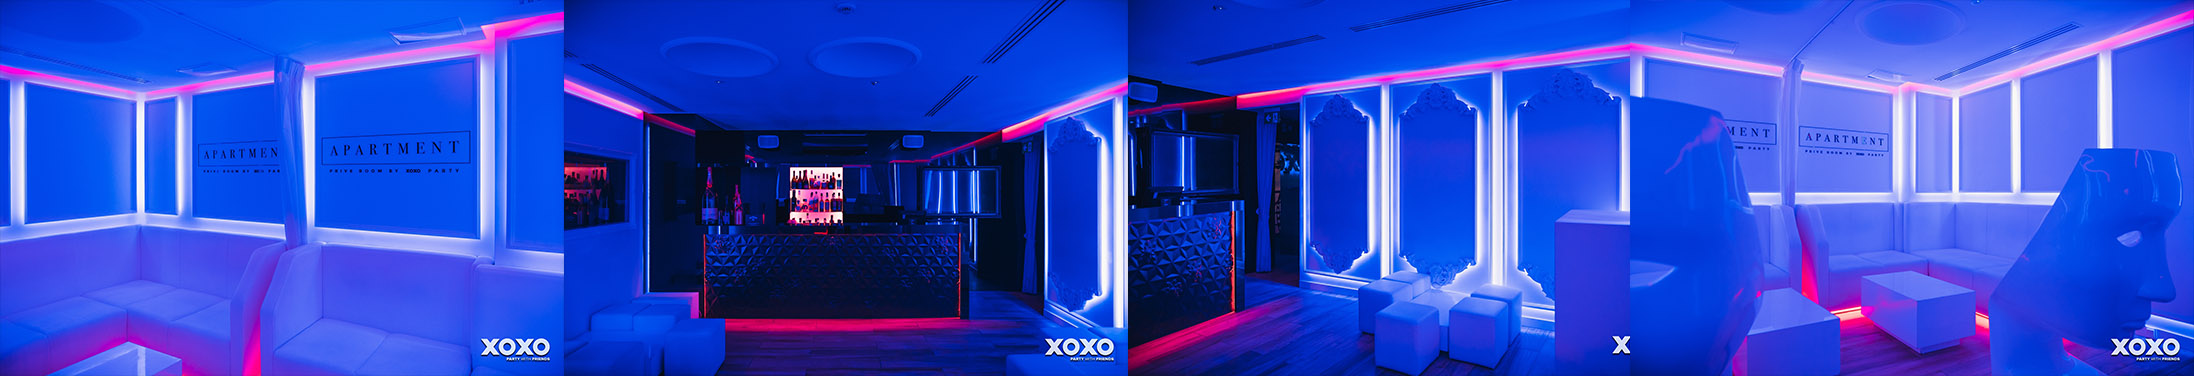 Wyjątkowe przyjęcia okolicznościowe w klubie XOXO w Warszawie.